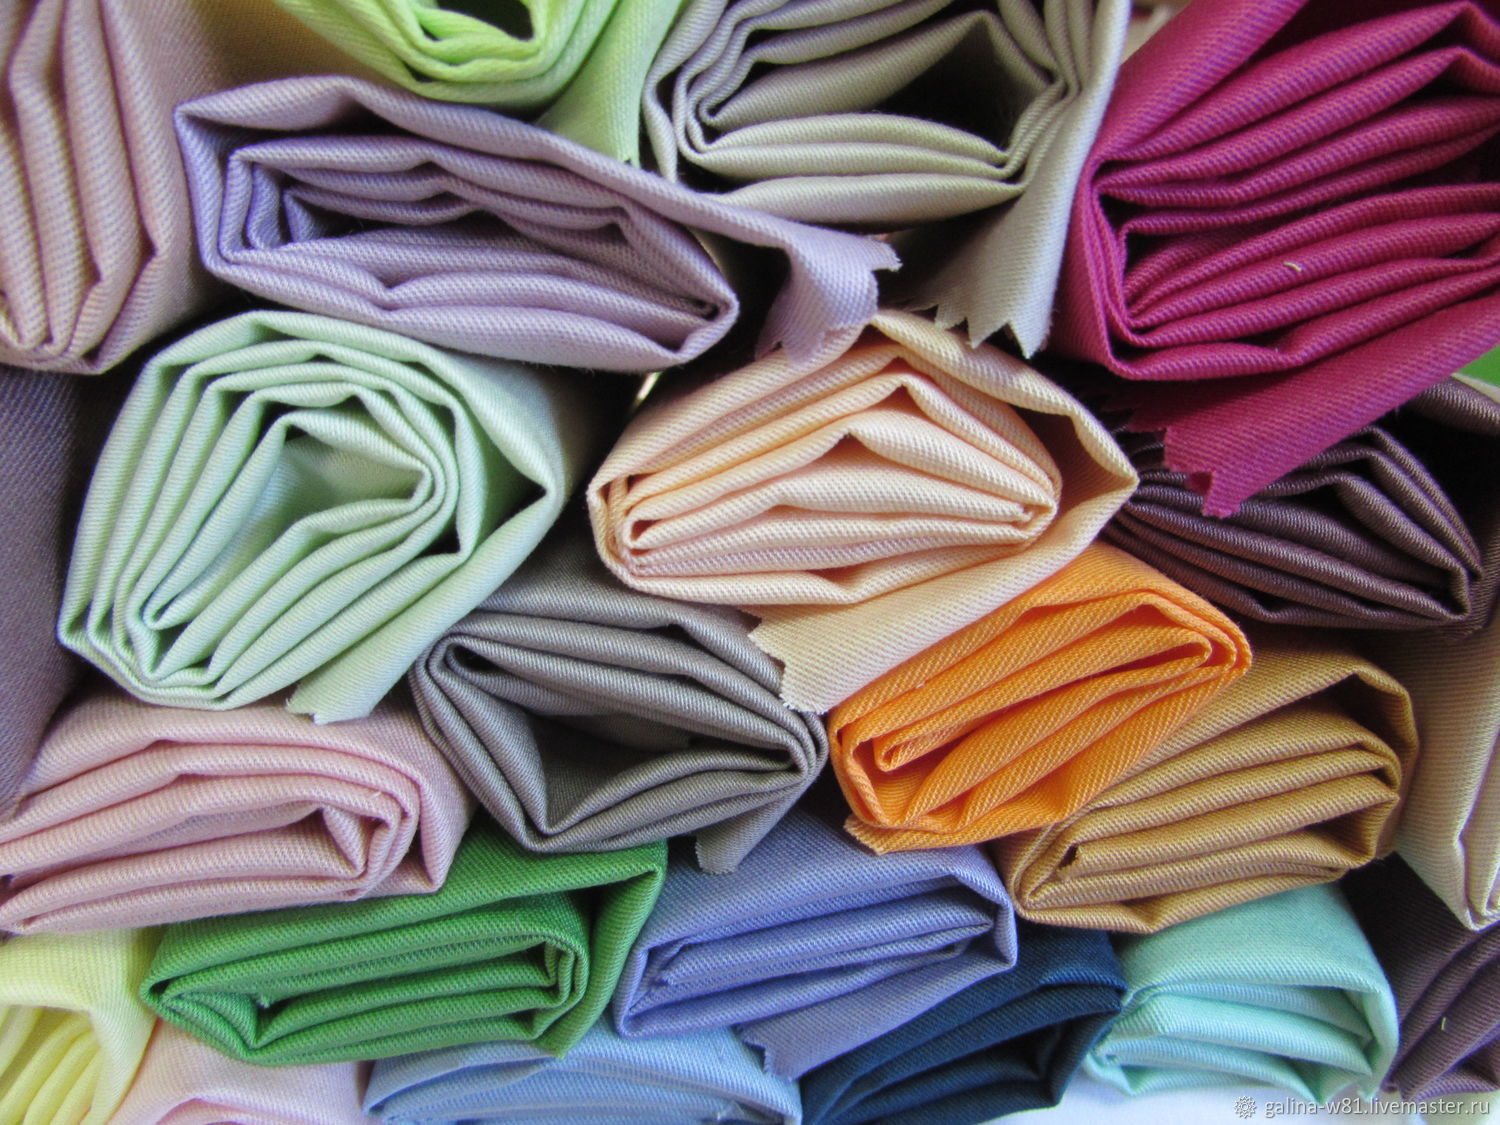 Производитель материал оптом. Производители ткани. Производители тканей в России. Сатин ткань юбка. Сатин ткань стопка.